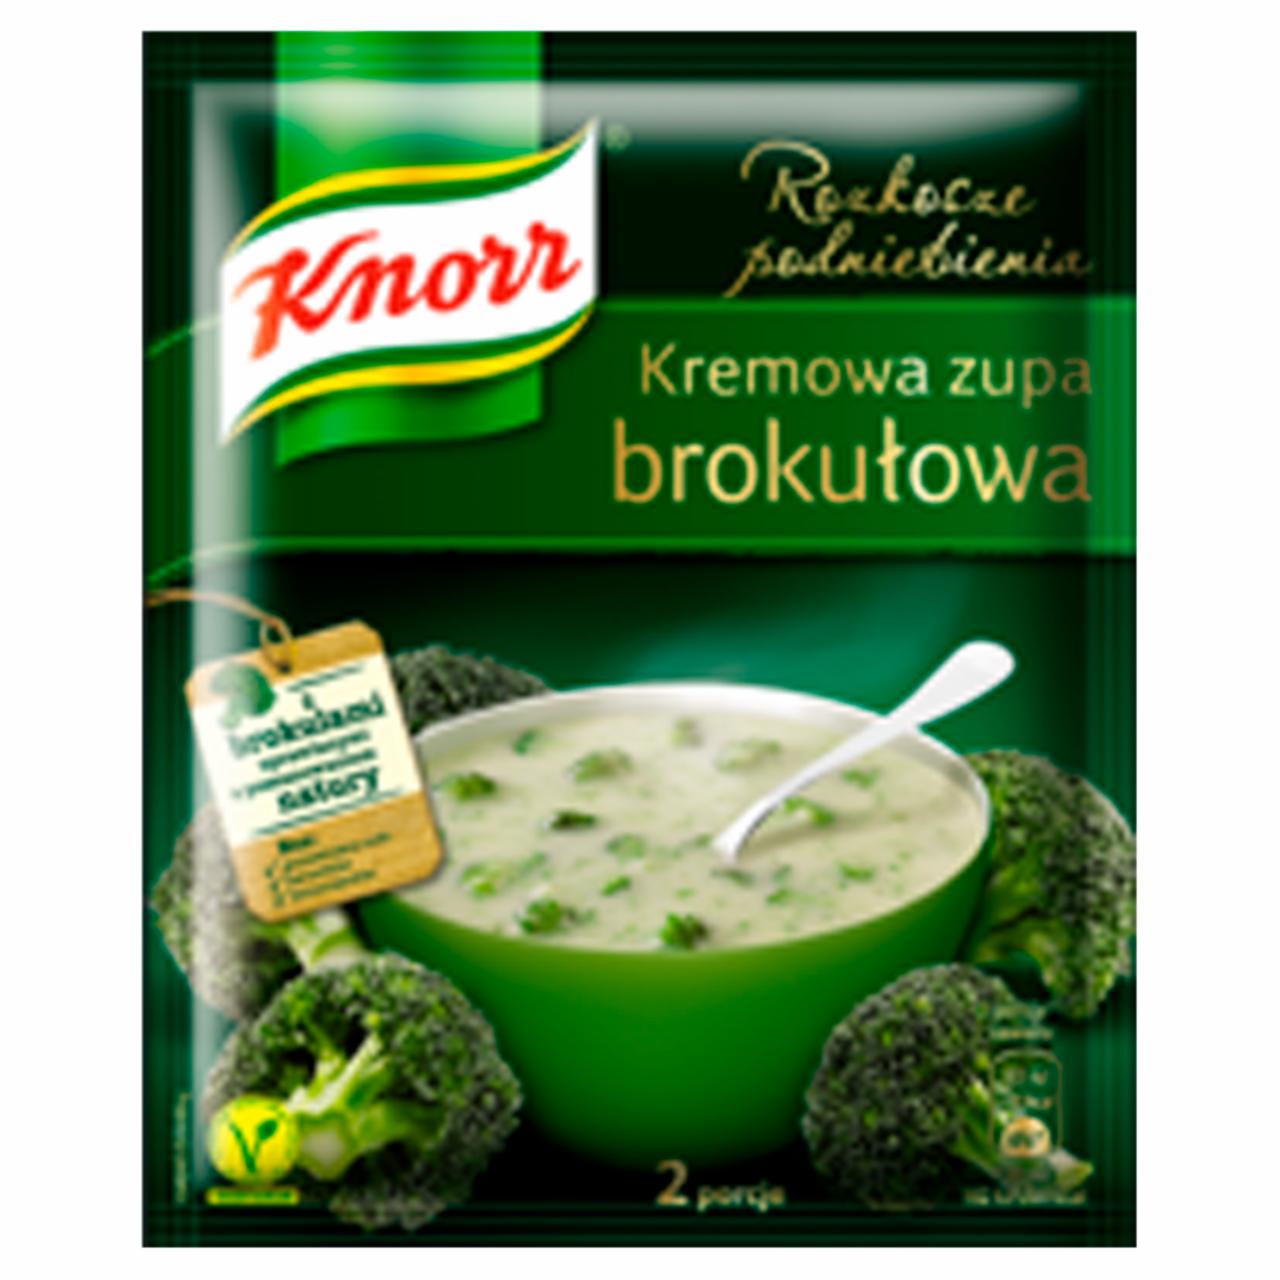 Zdjęcia - Knorr Rozkosze podniebienia Kremowa zupa brokułowa 50 g